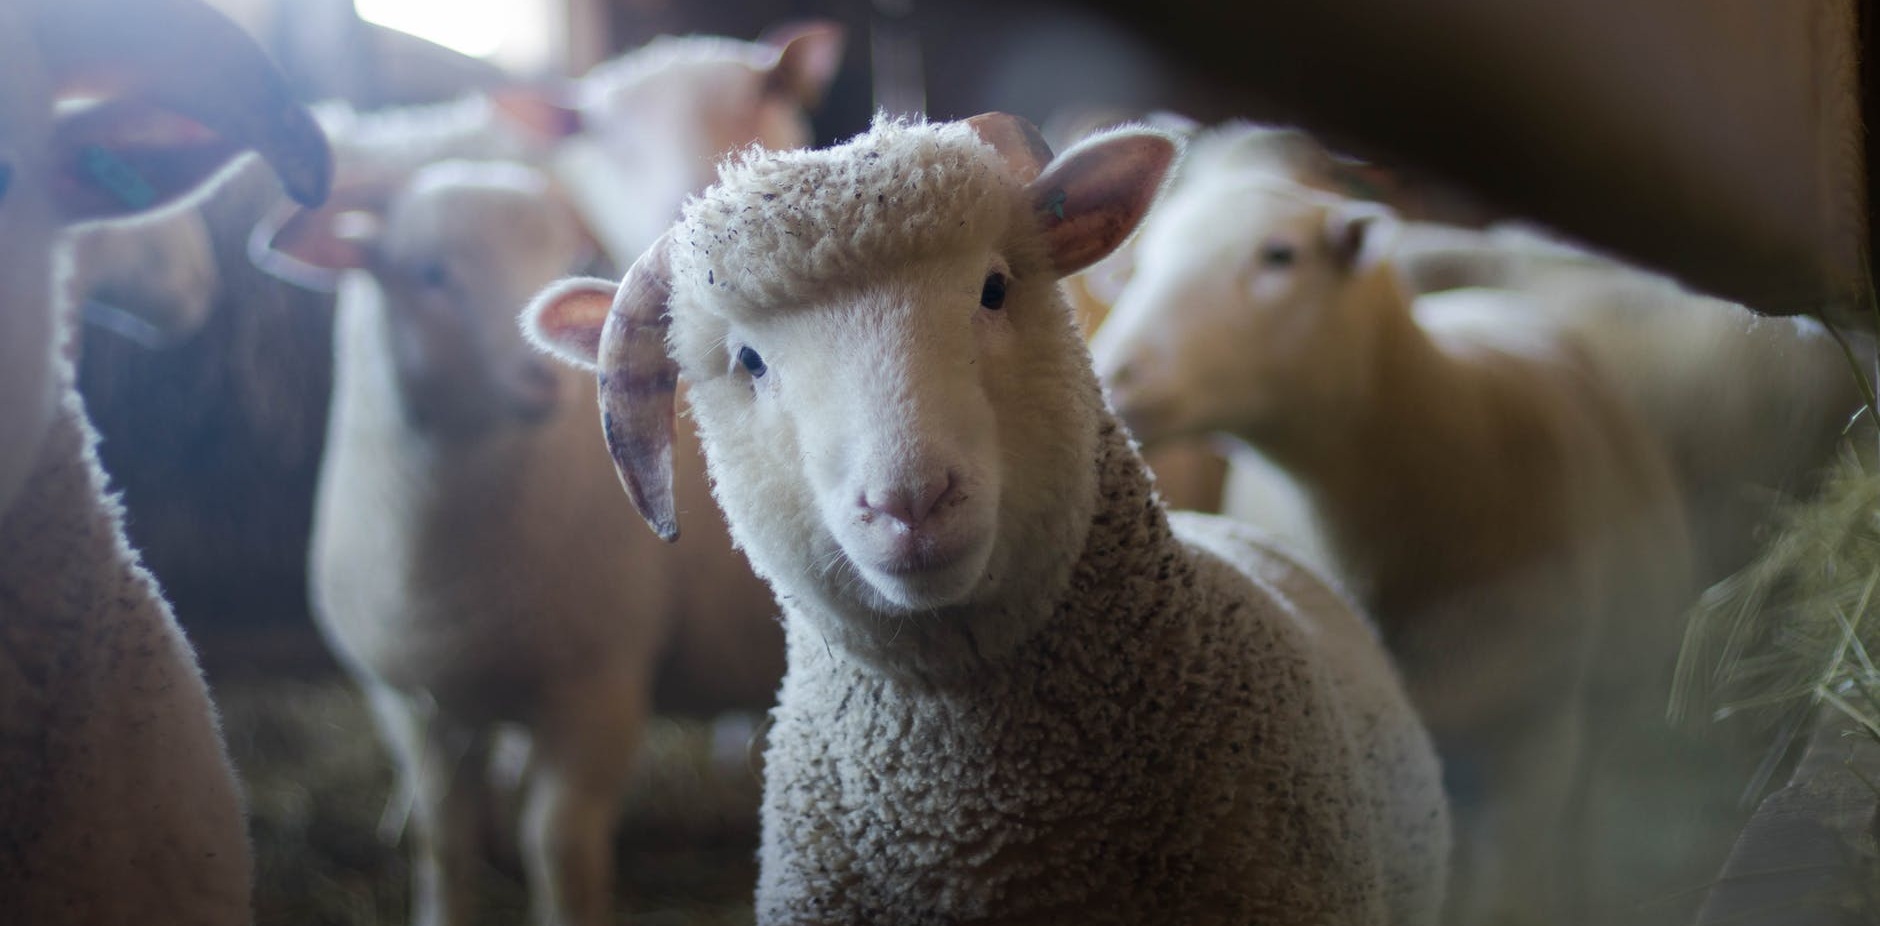 Inscriben 15 ovejas en colegio de Francia para evitar cierre de una clase